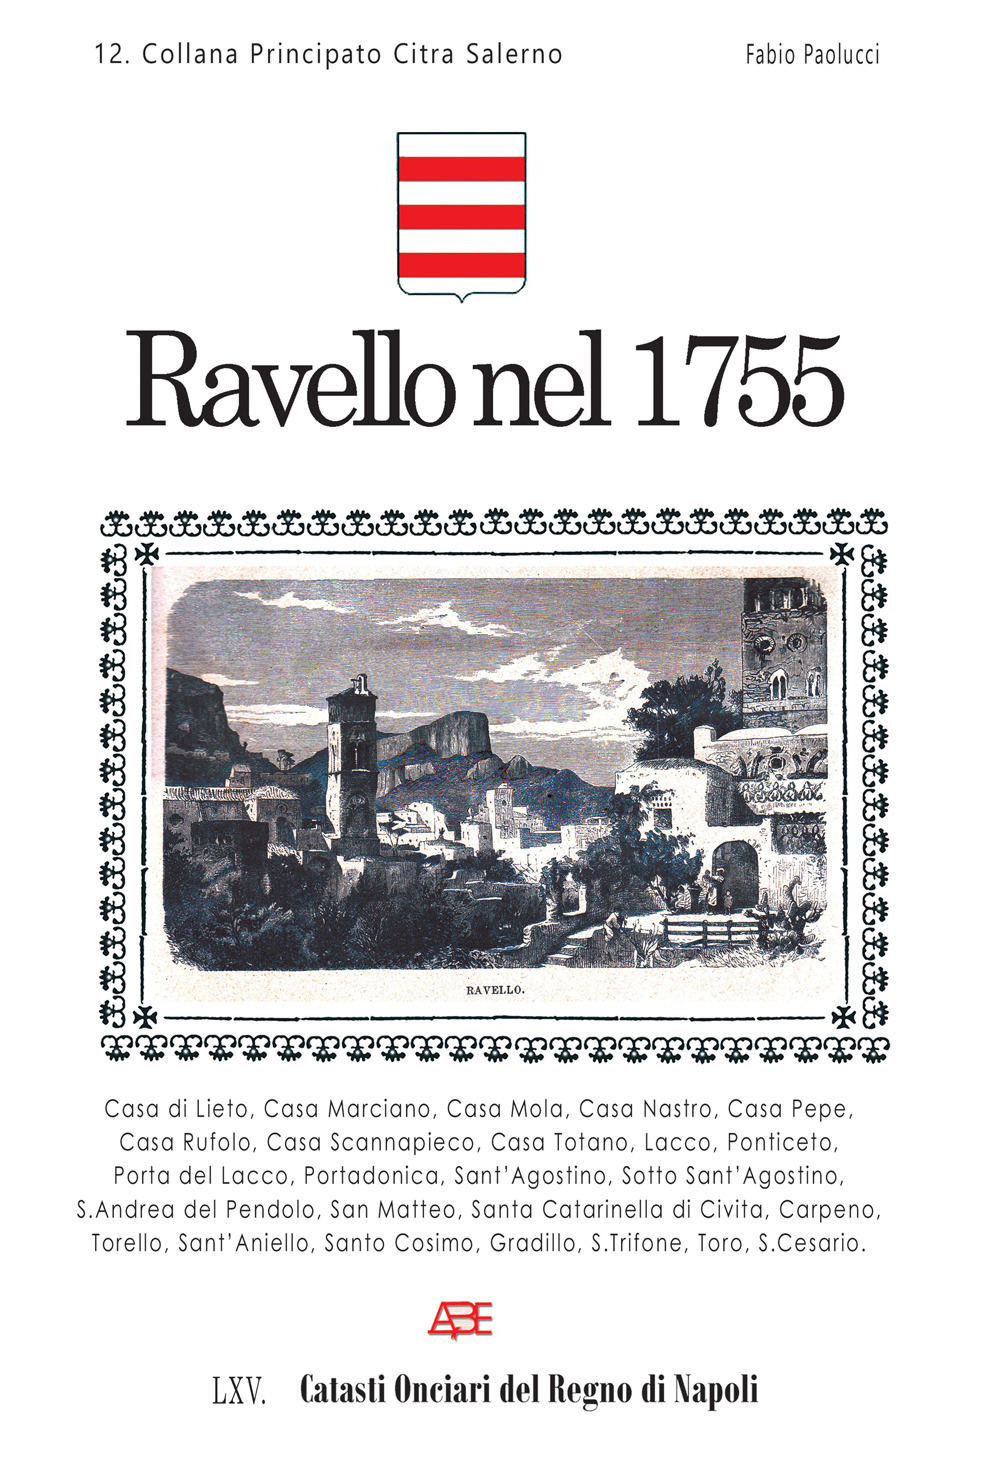 Ravello nel 1755